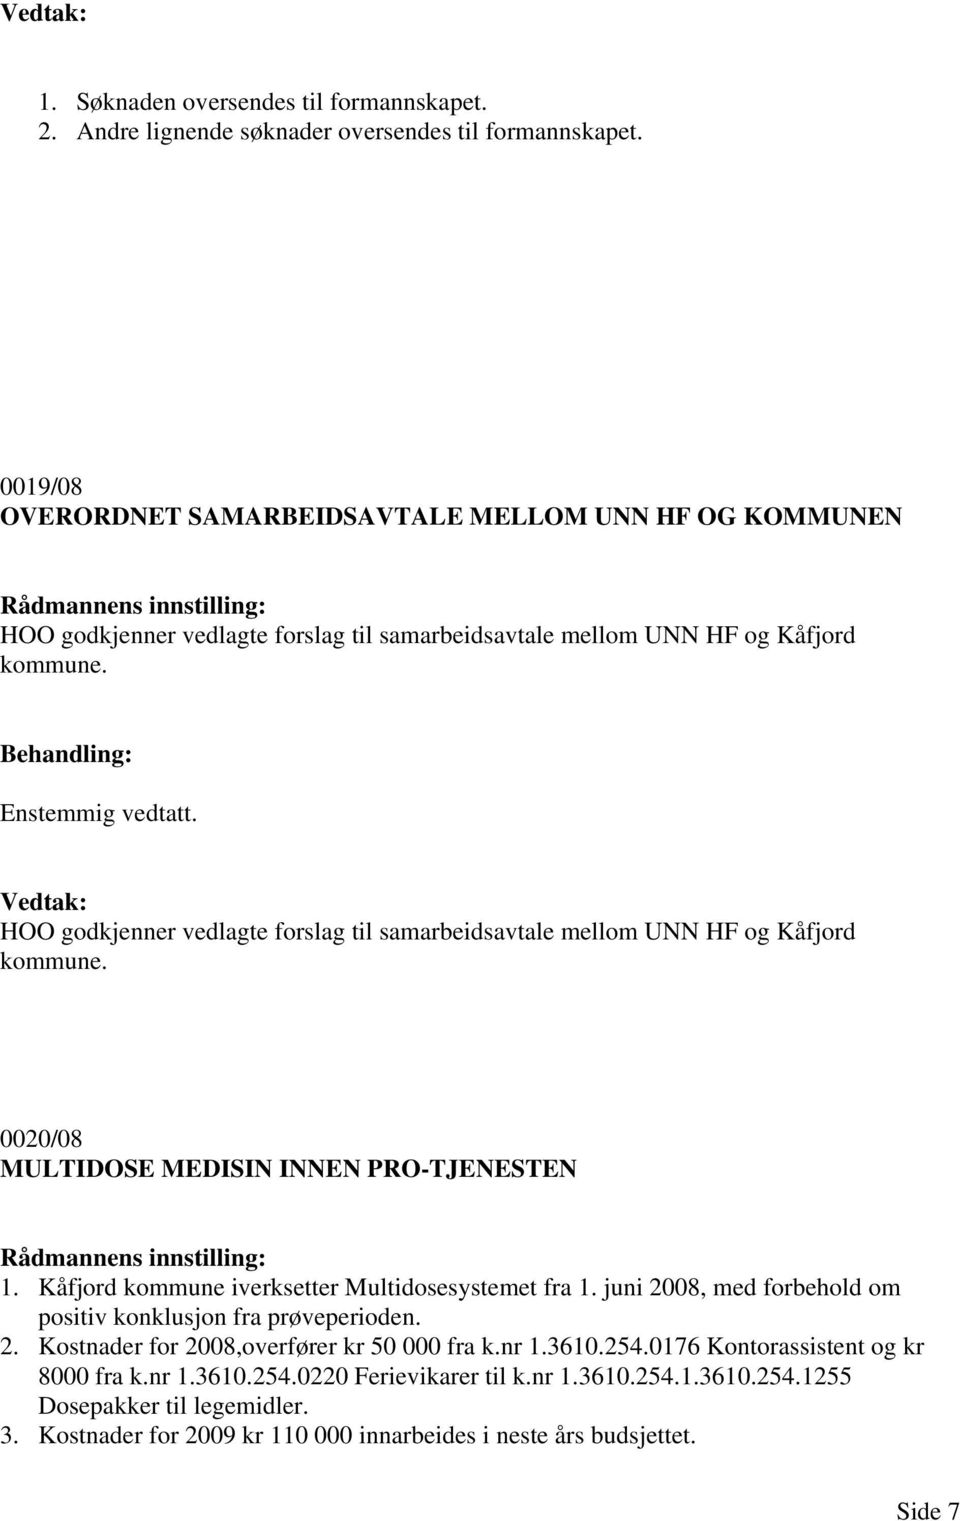 HOO godkjenner vedlagte forslag til samarbeidsavtale mellom UNN HF og Kåfjord kommune. 0020/08 MULTIDOSE MEDISIN INNEN PRO-TJENESTEN 1. Kåfjord kommune iverksetter Multidosesystemet fra 1.